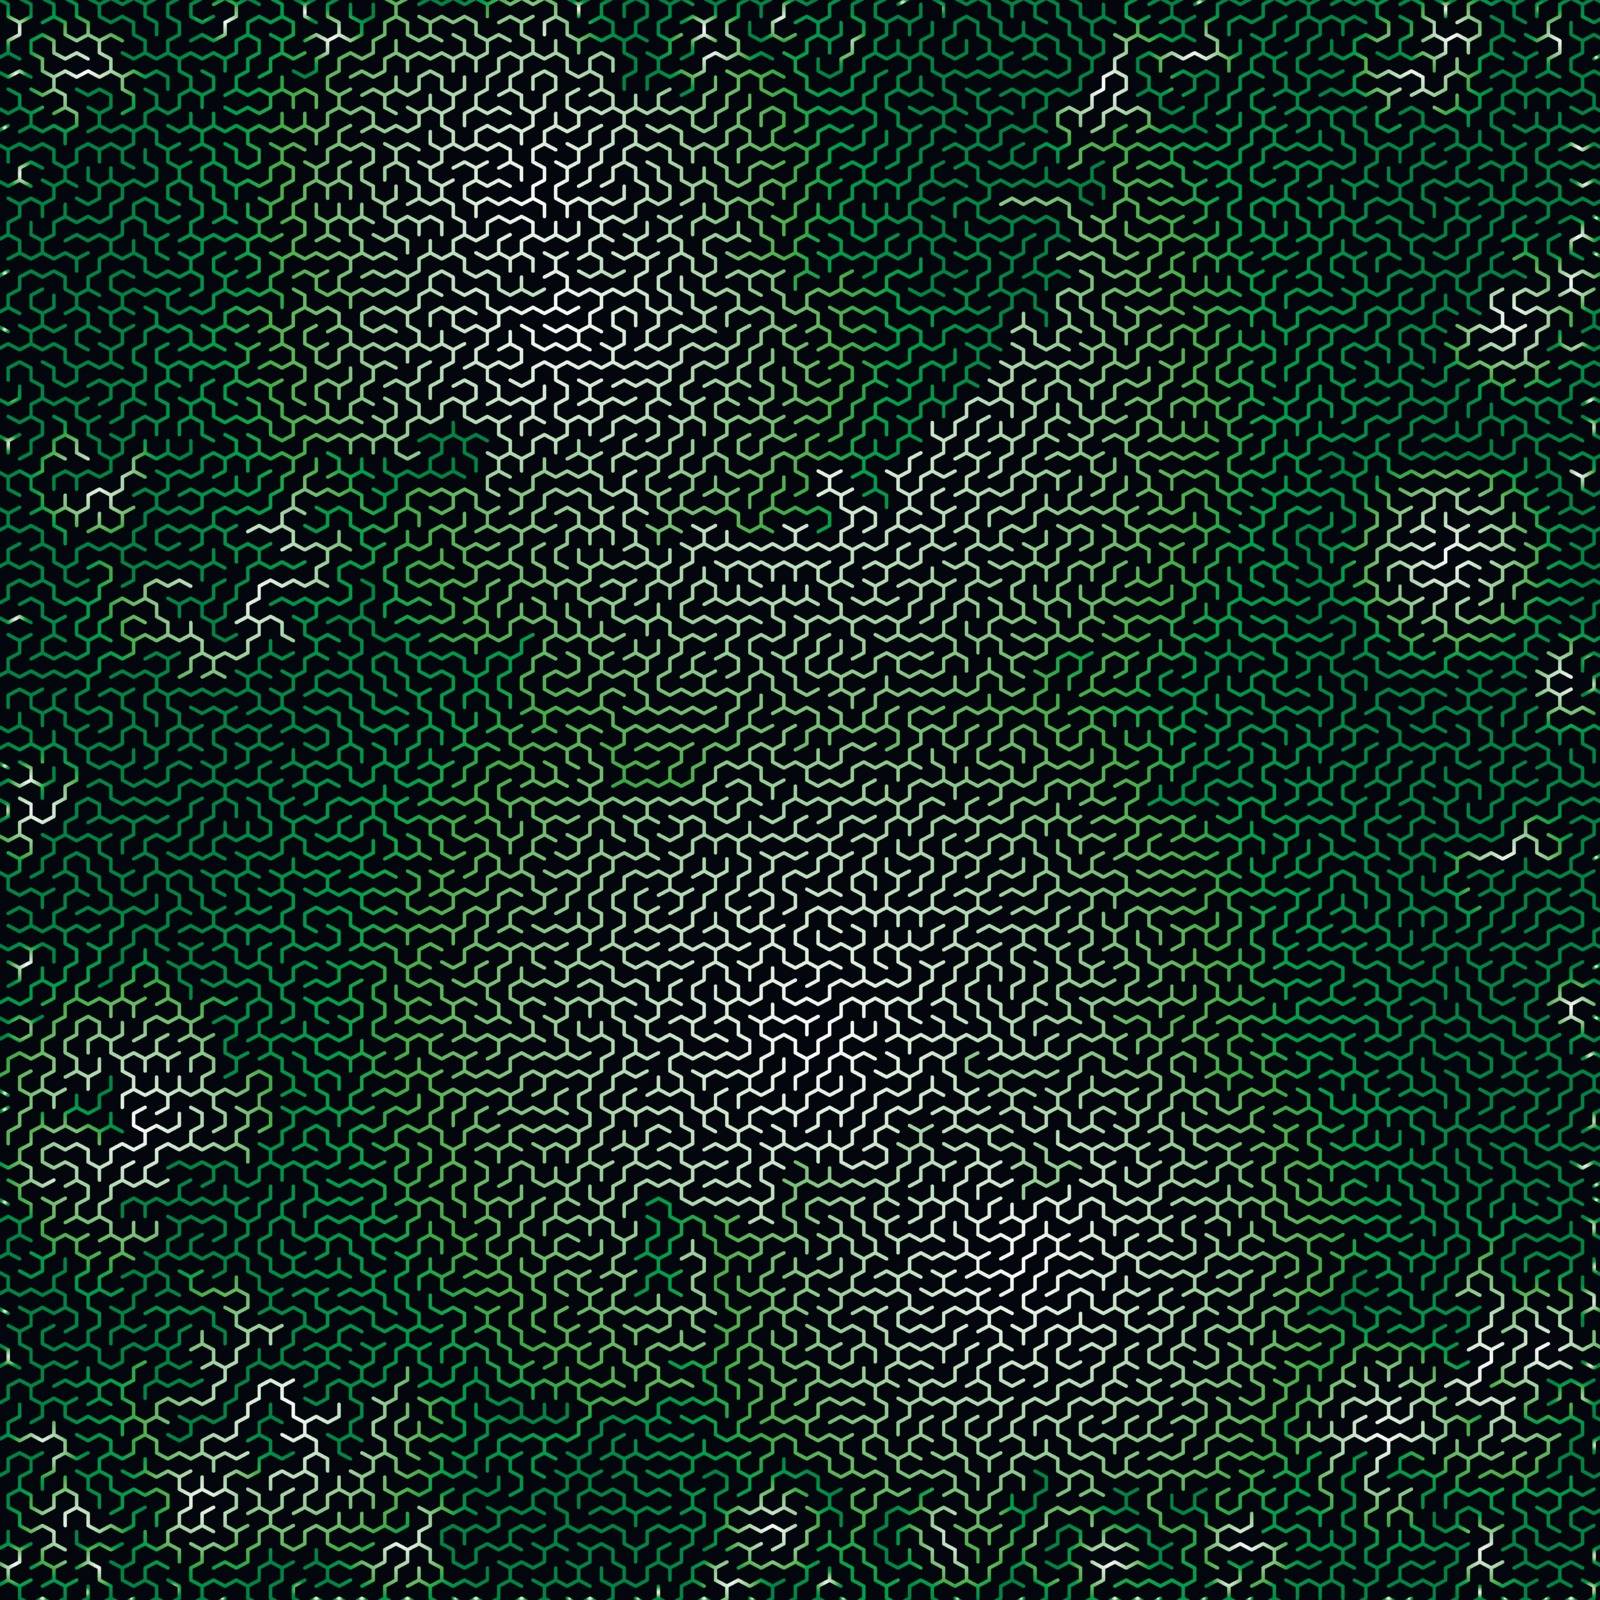 Green Labyrinth on Black Background. Kids Maze